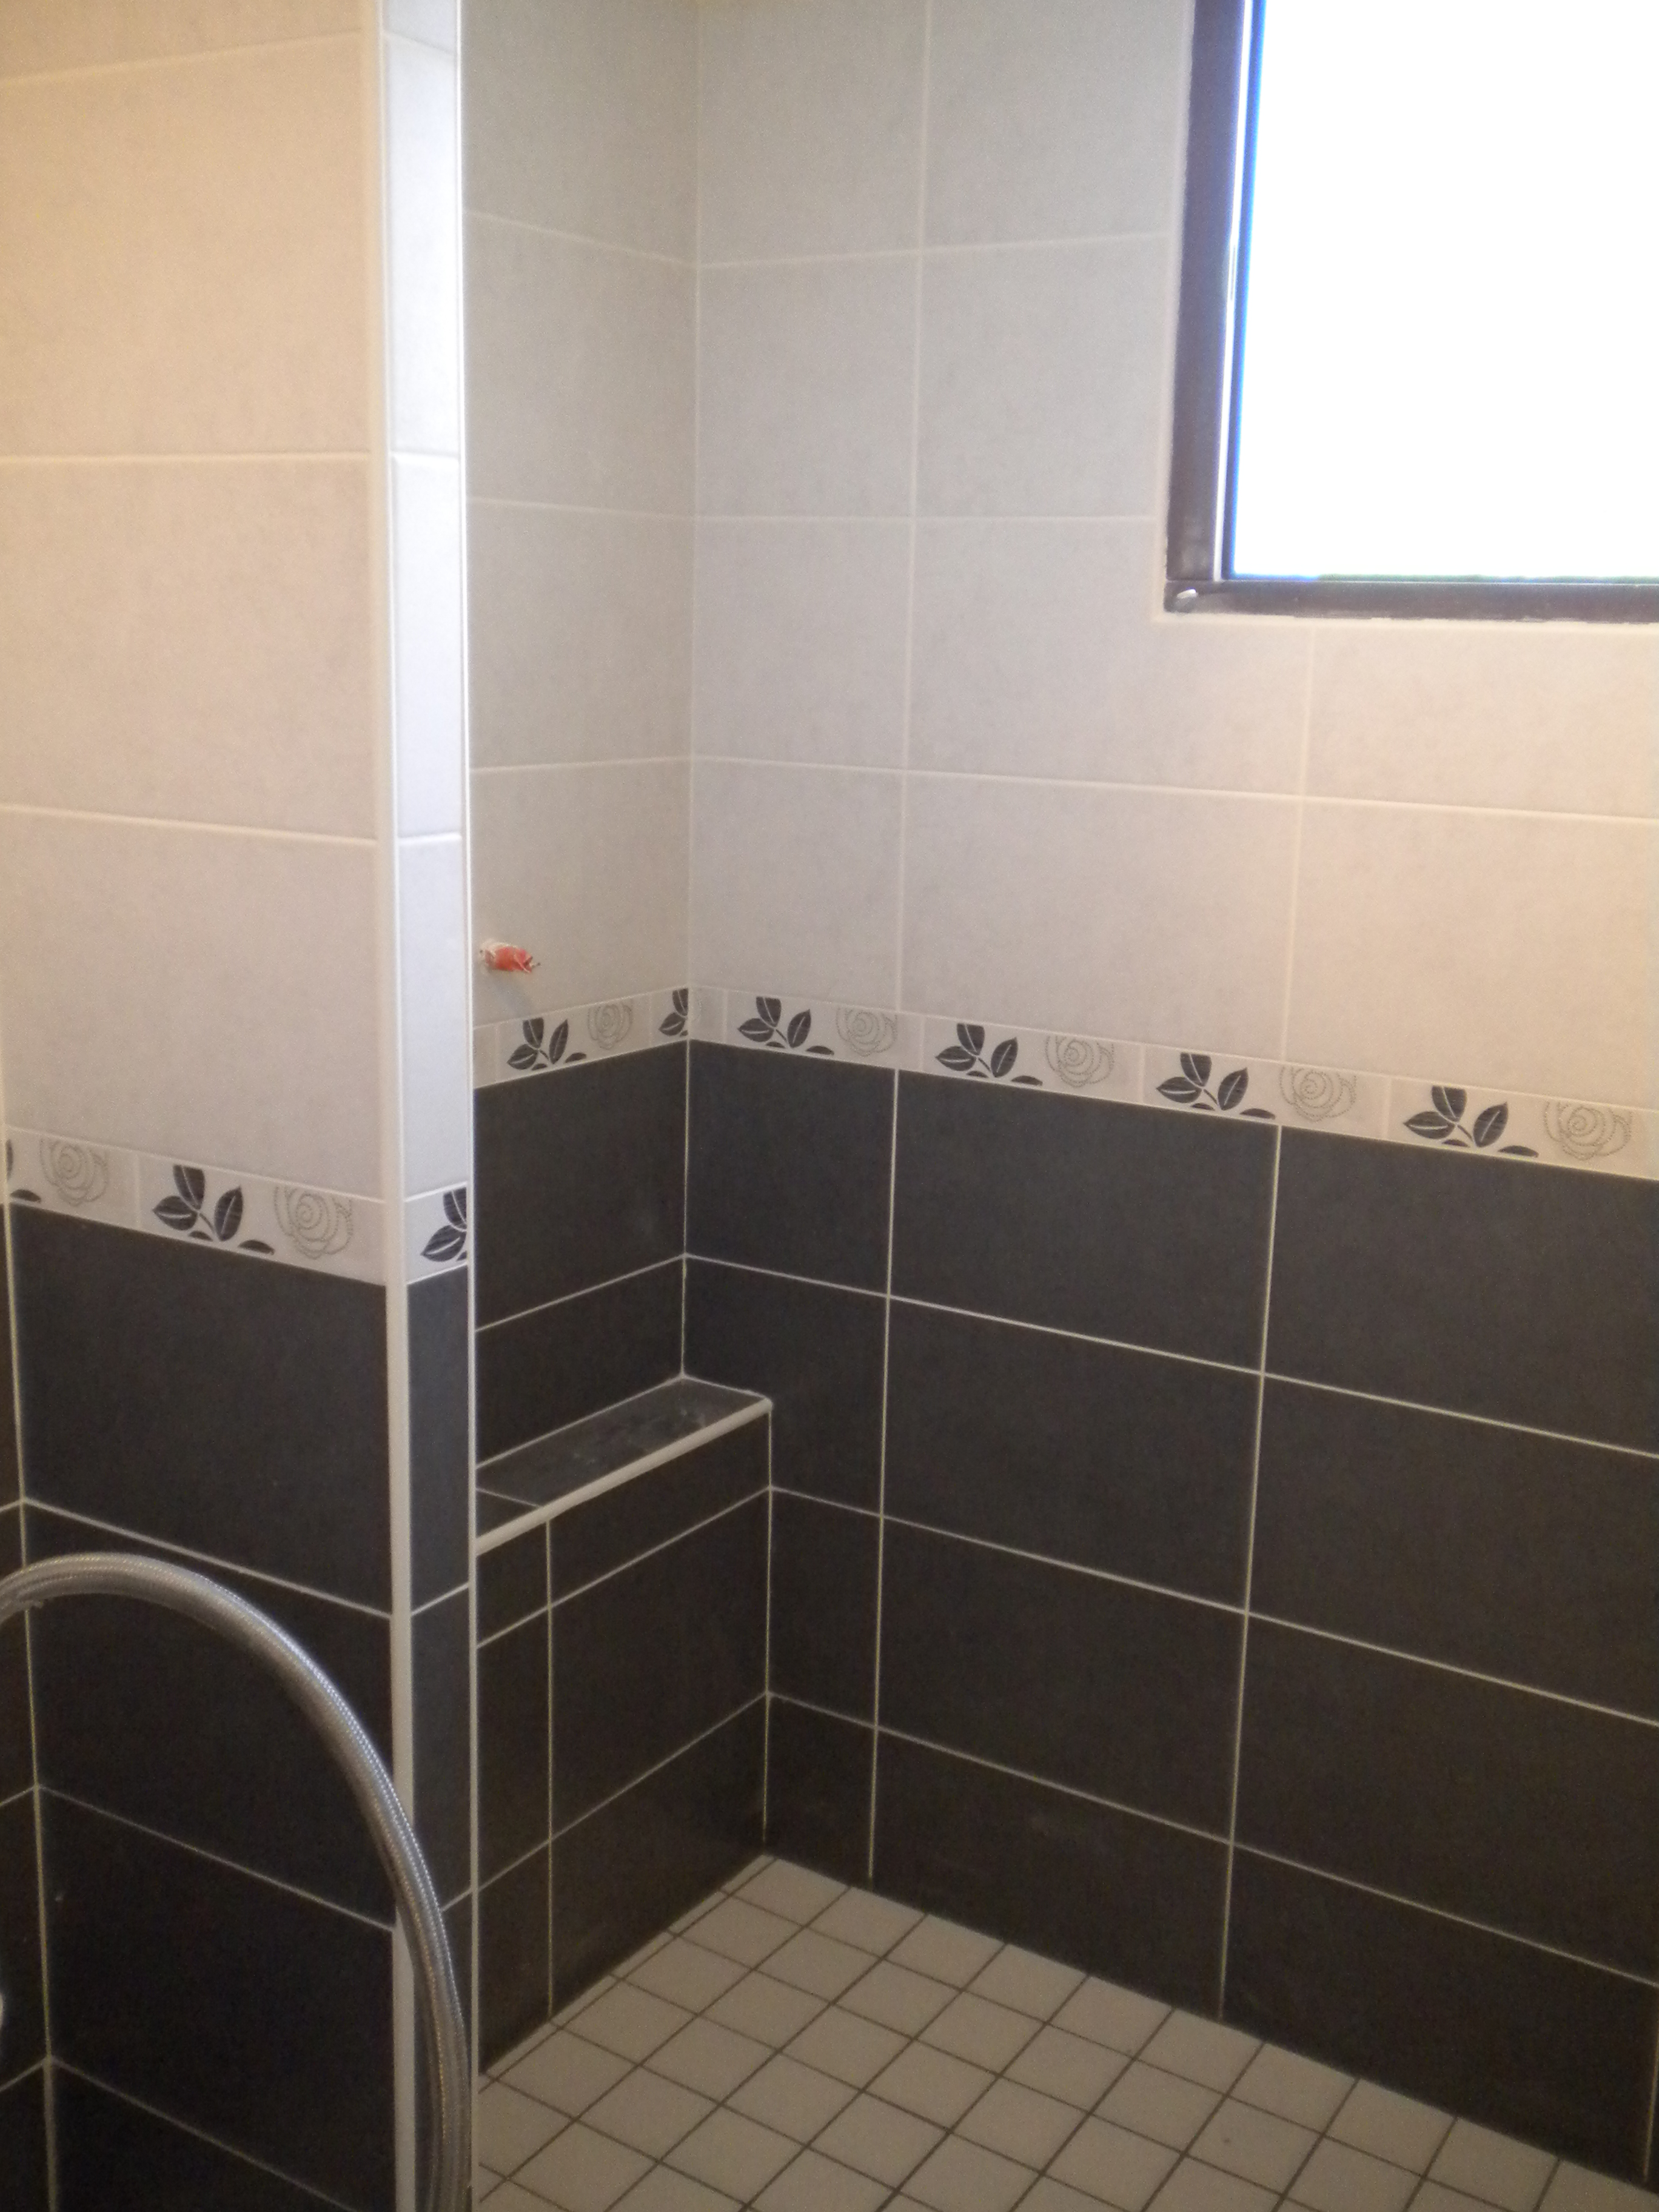 Salle de bains Dangeul accessibilité pour personnes à mobilités réduites (1)